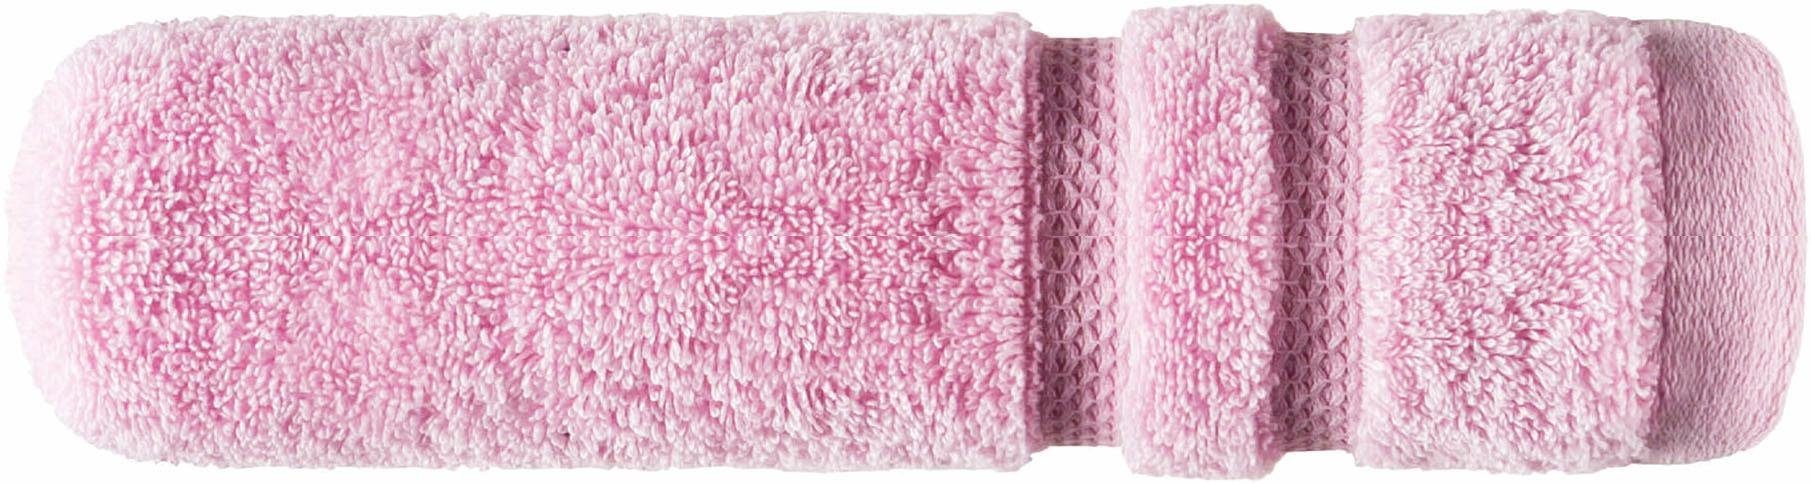 100% saugfähig Touch, Baumwolle flauschig, (1-St), Egeria rosa extrem & Micro Walkfrottee Gästehandtuch Streifenbordüre,